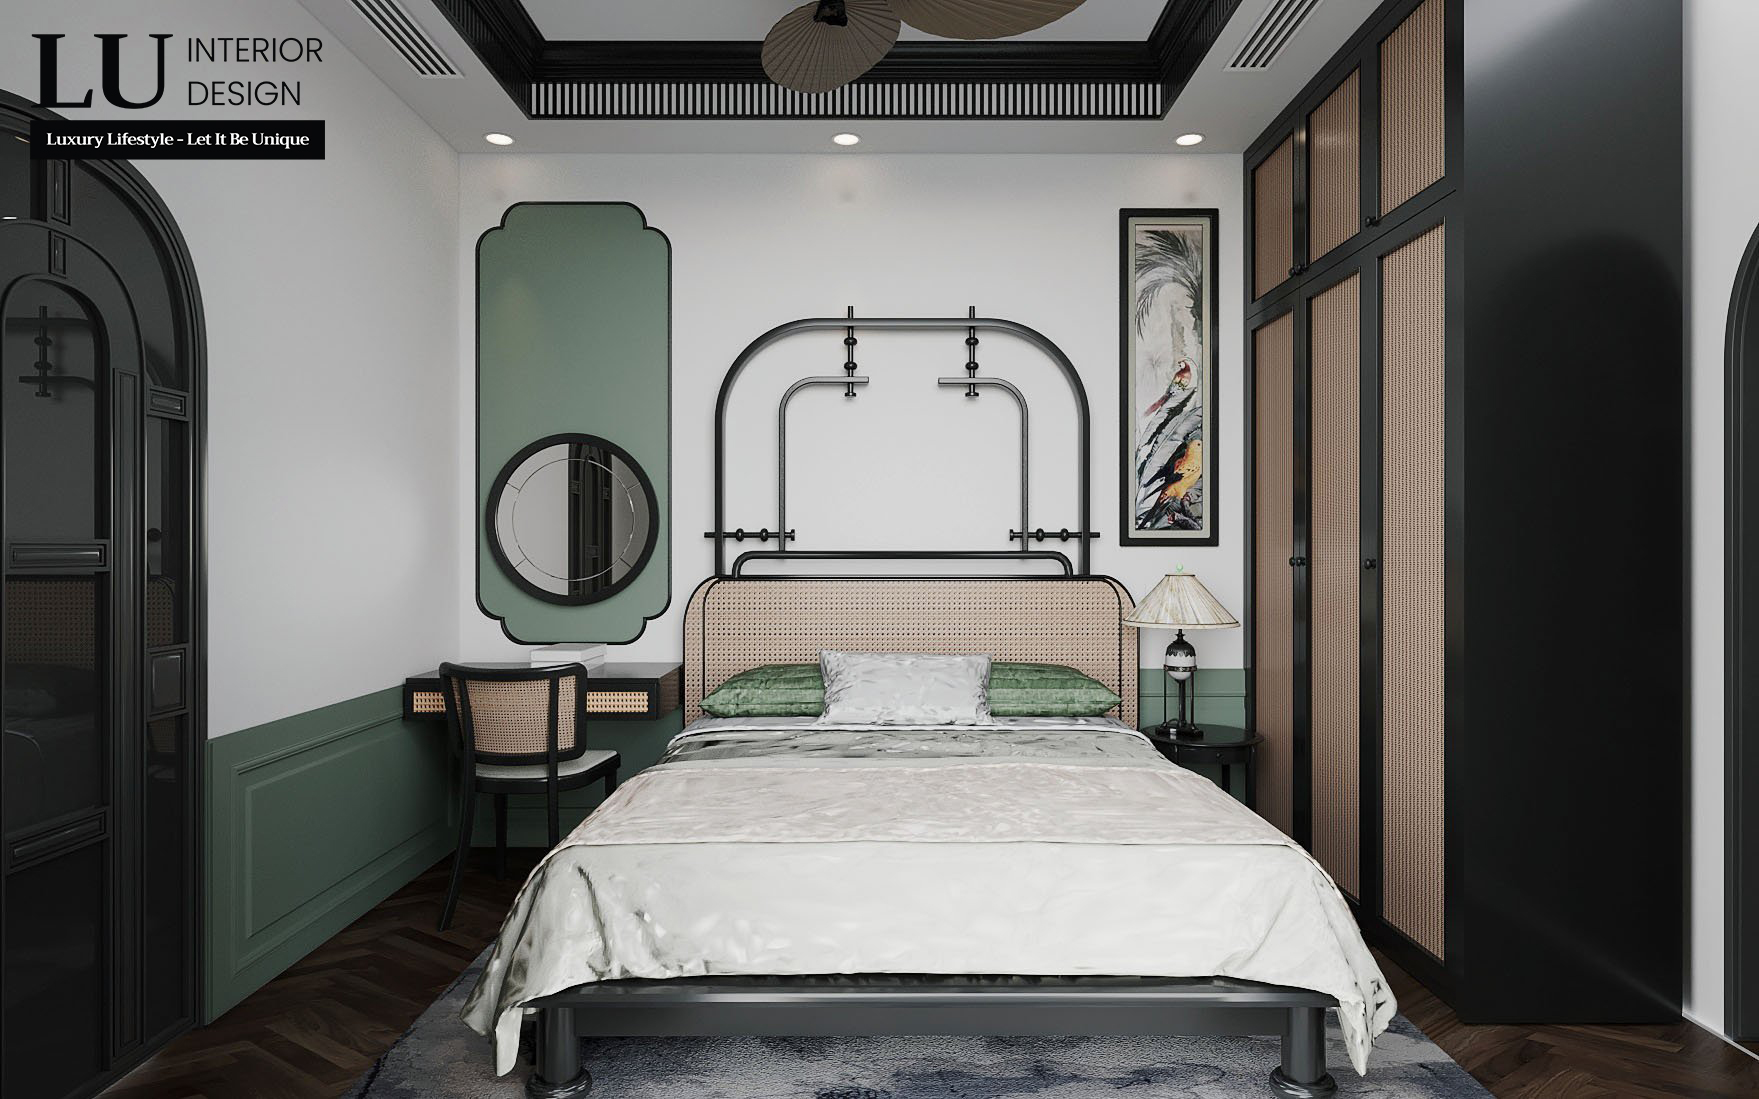 Phòng ngủ Master đơn giản và tinh tế, bố trí đồ nội thất dễ dàng ứng dụng trong thực tế mà không khiến không gian trở nên nặng nề. Ảnh: LU Design